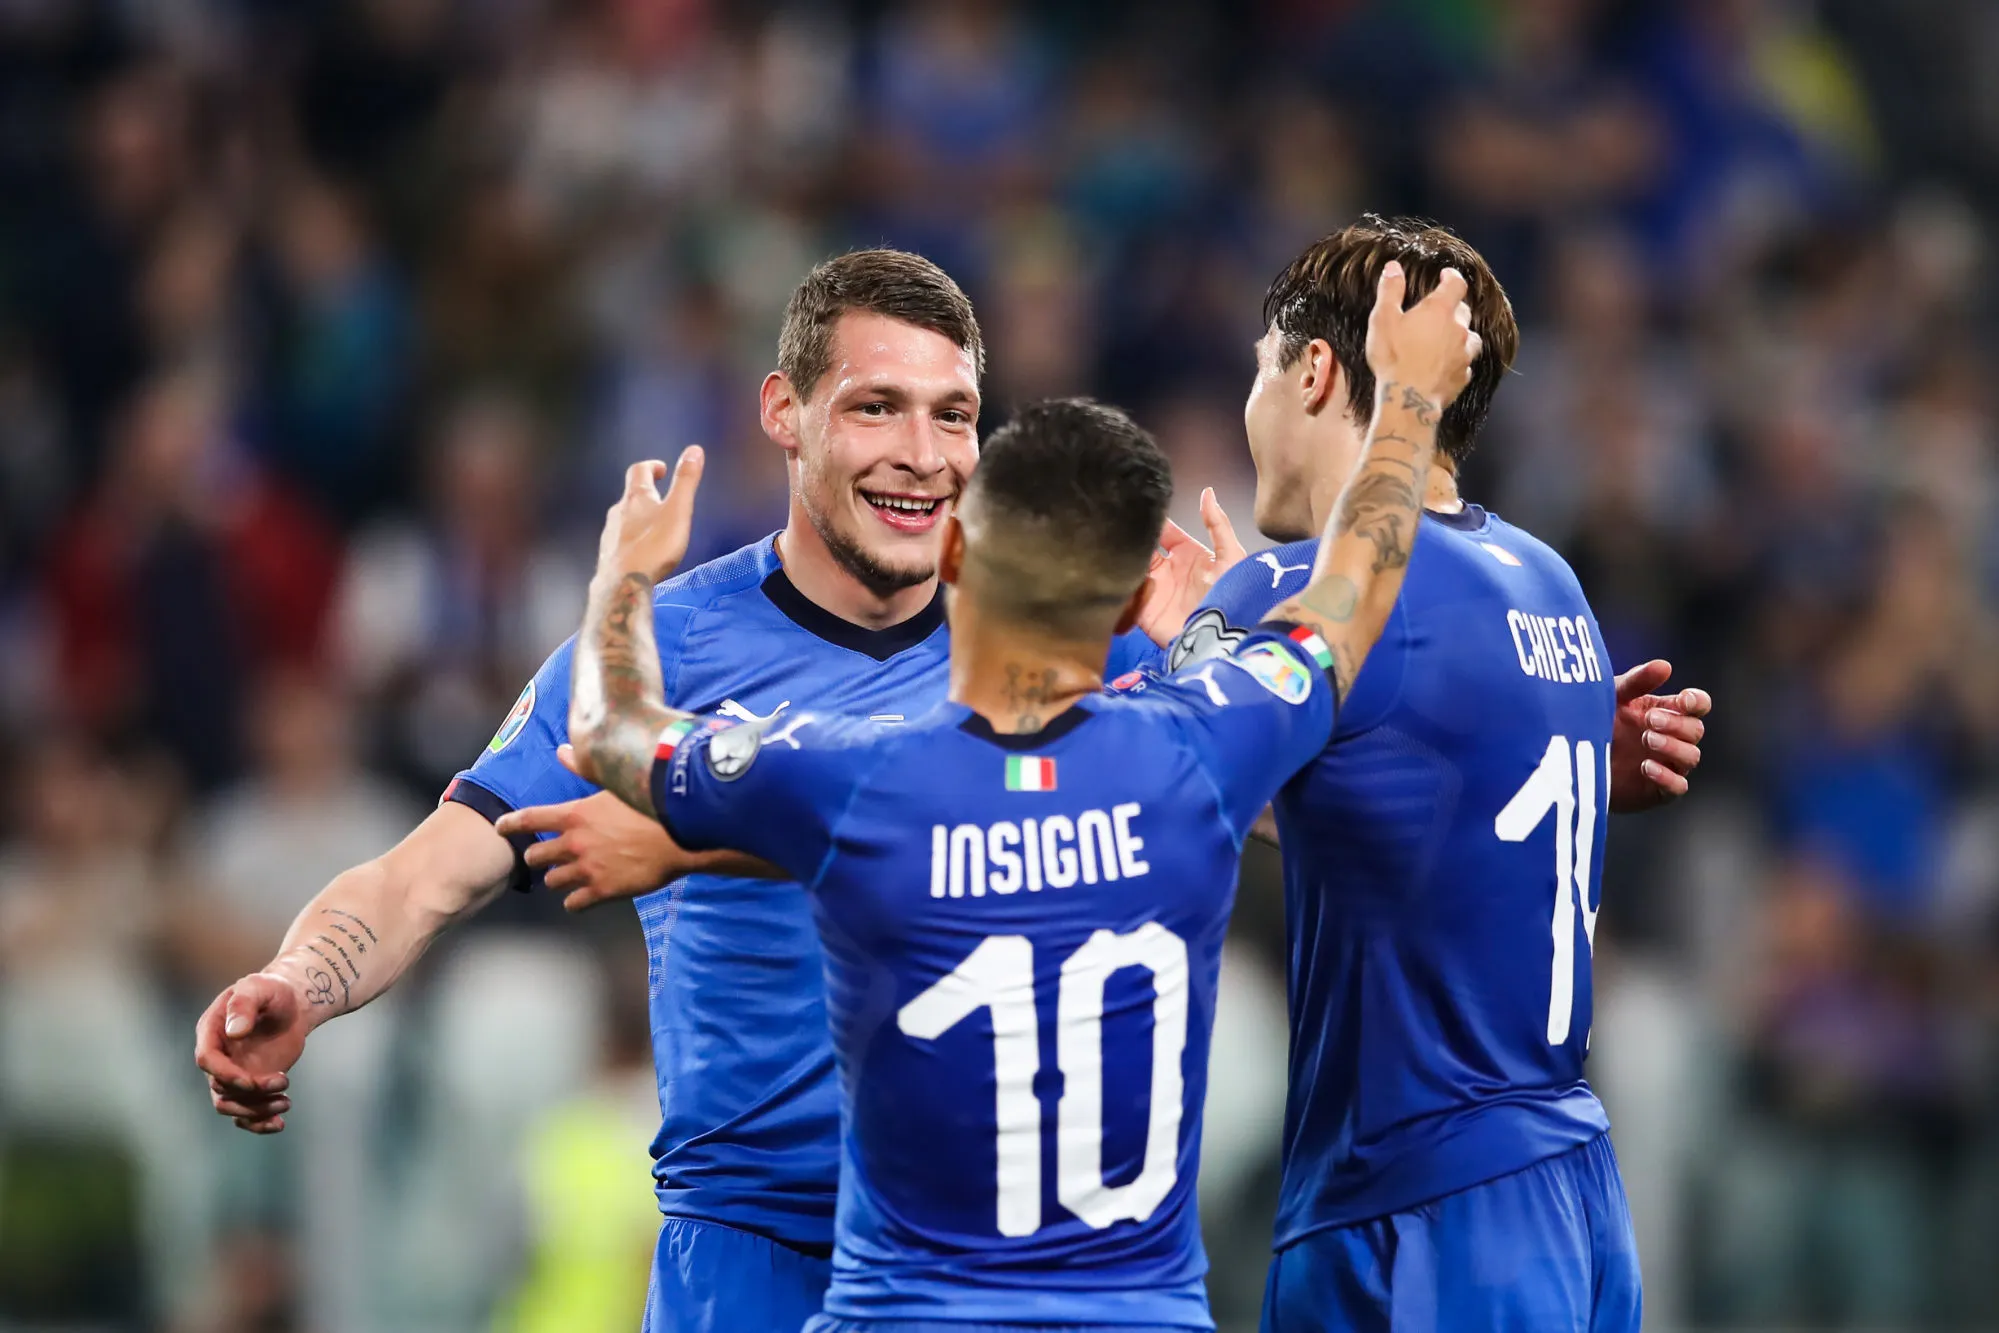 Pronostic Italie Irlande du Nord : Analyse, cotes et prono du match des éliminatoires pour la Coupe du monde 2022